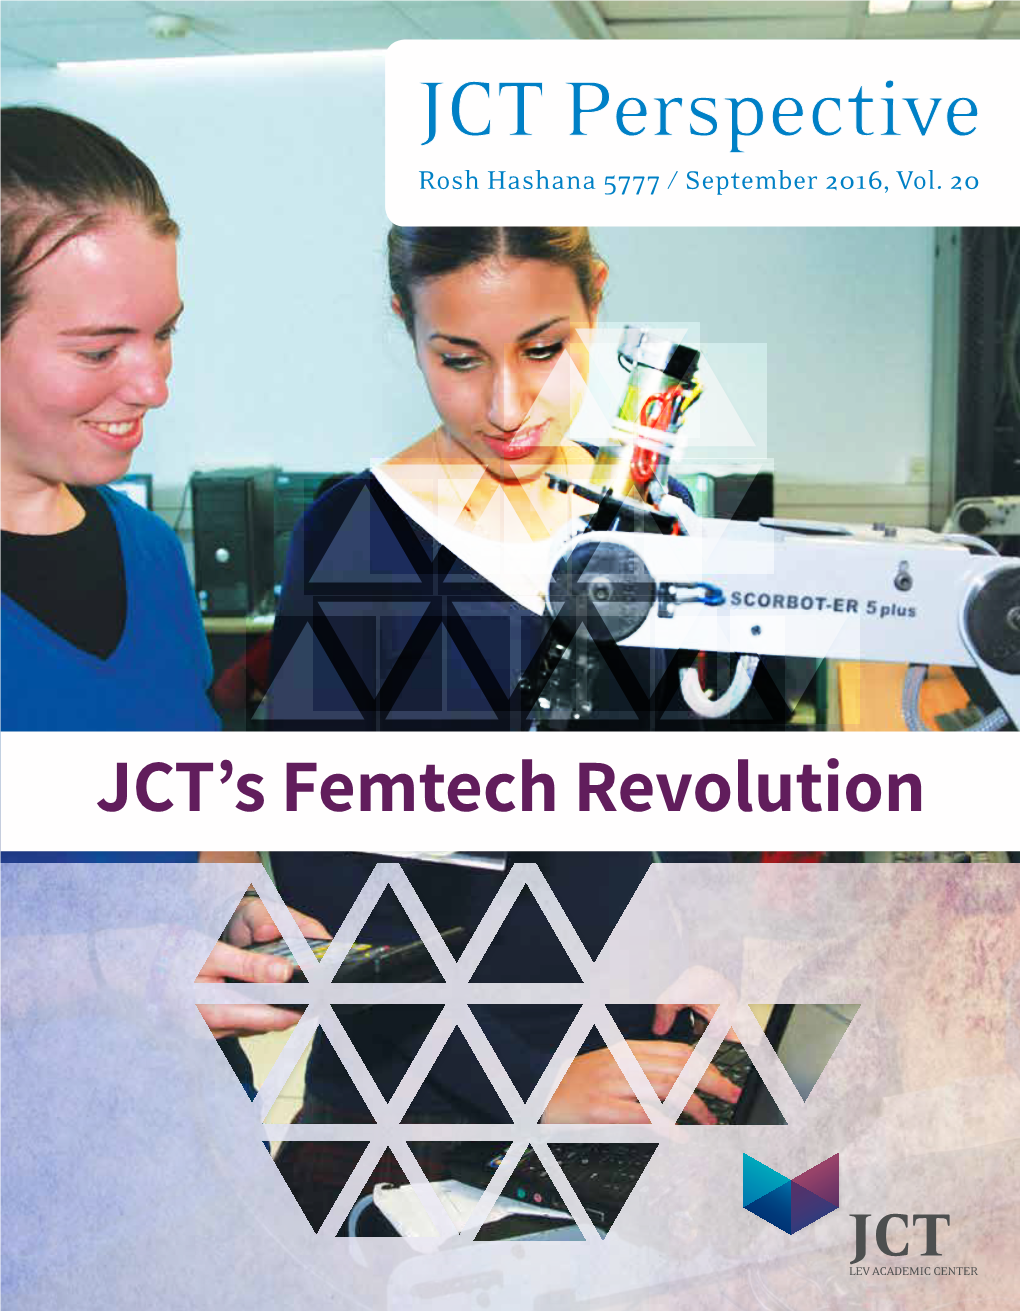 JCT's Femtech Revolution